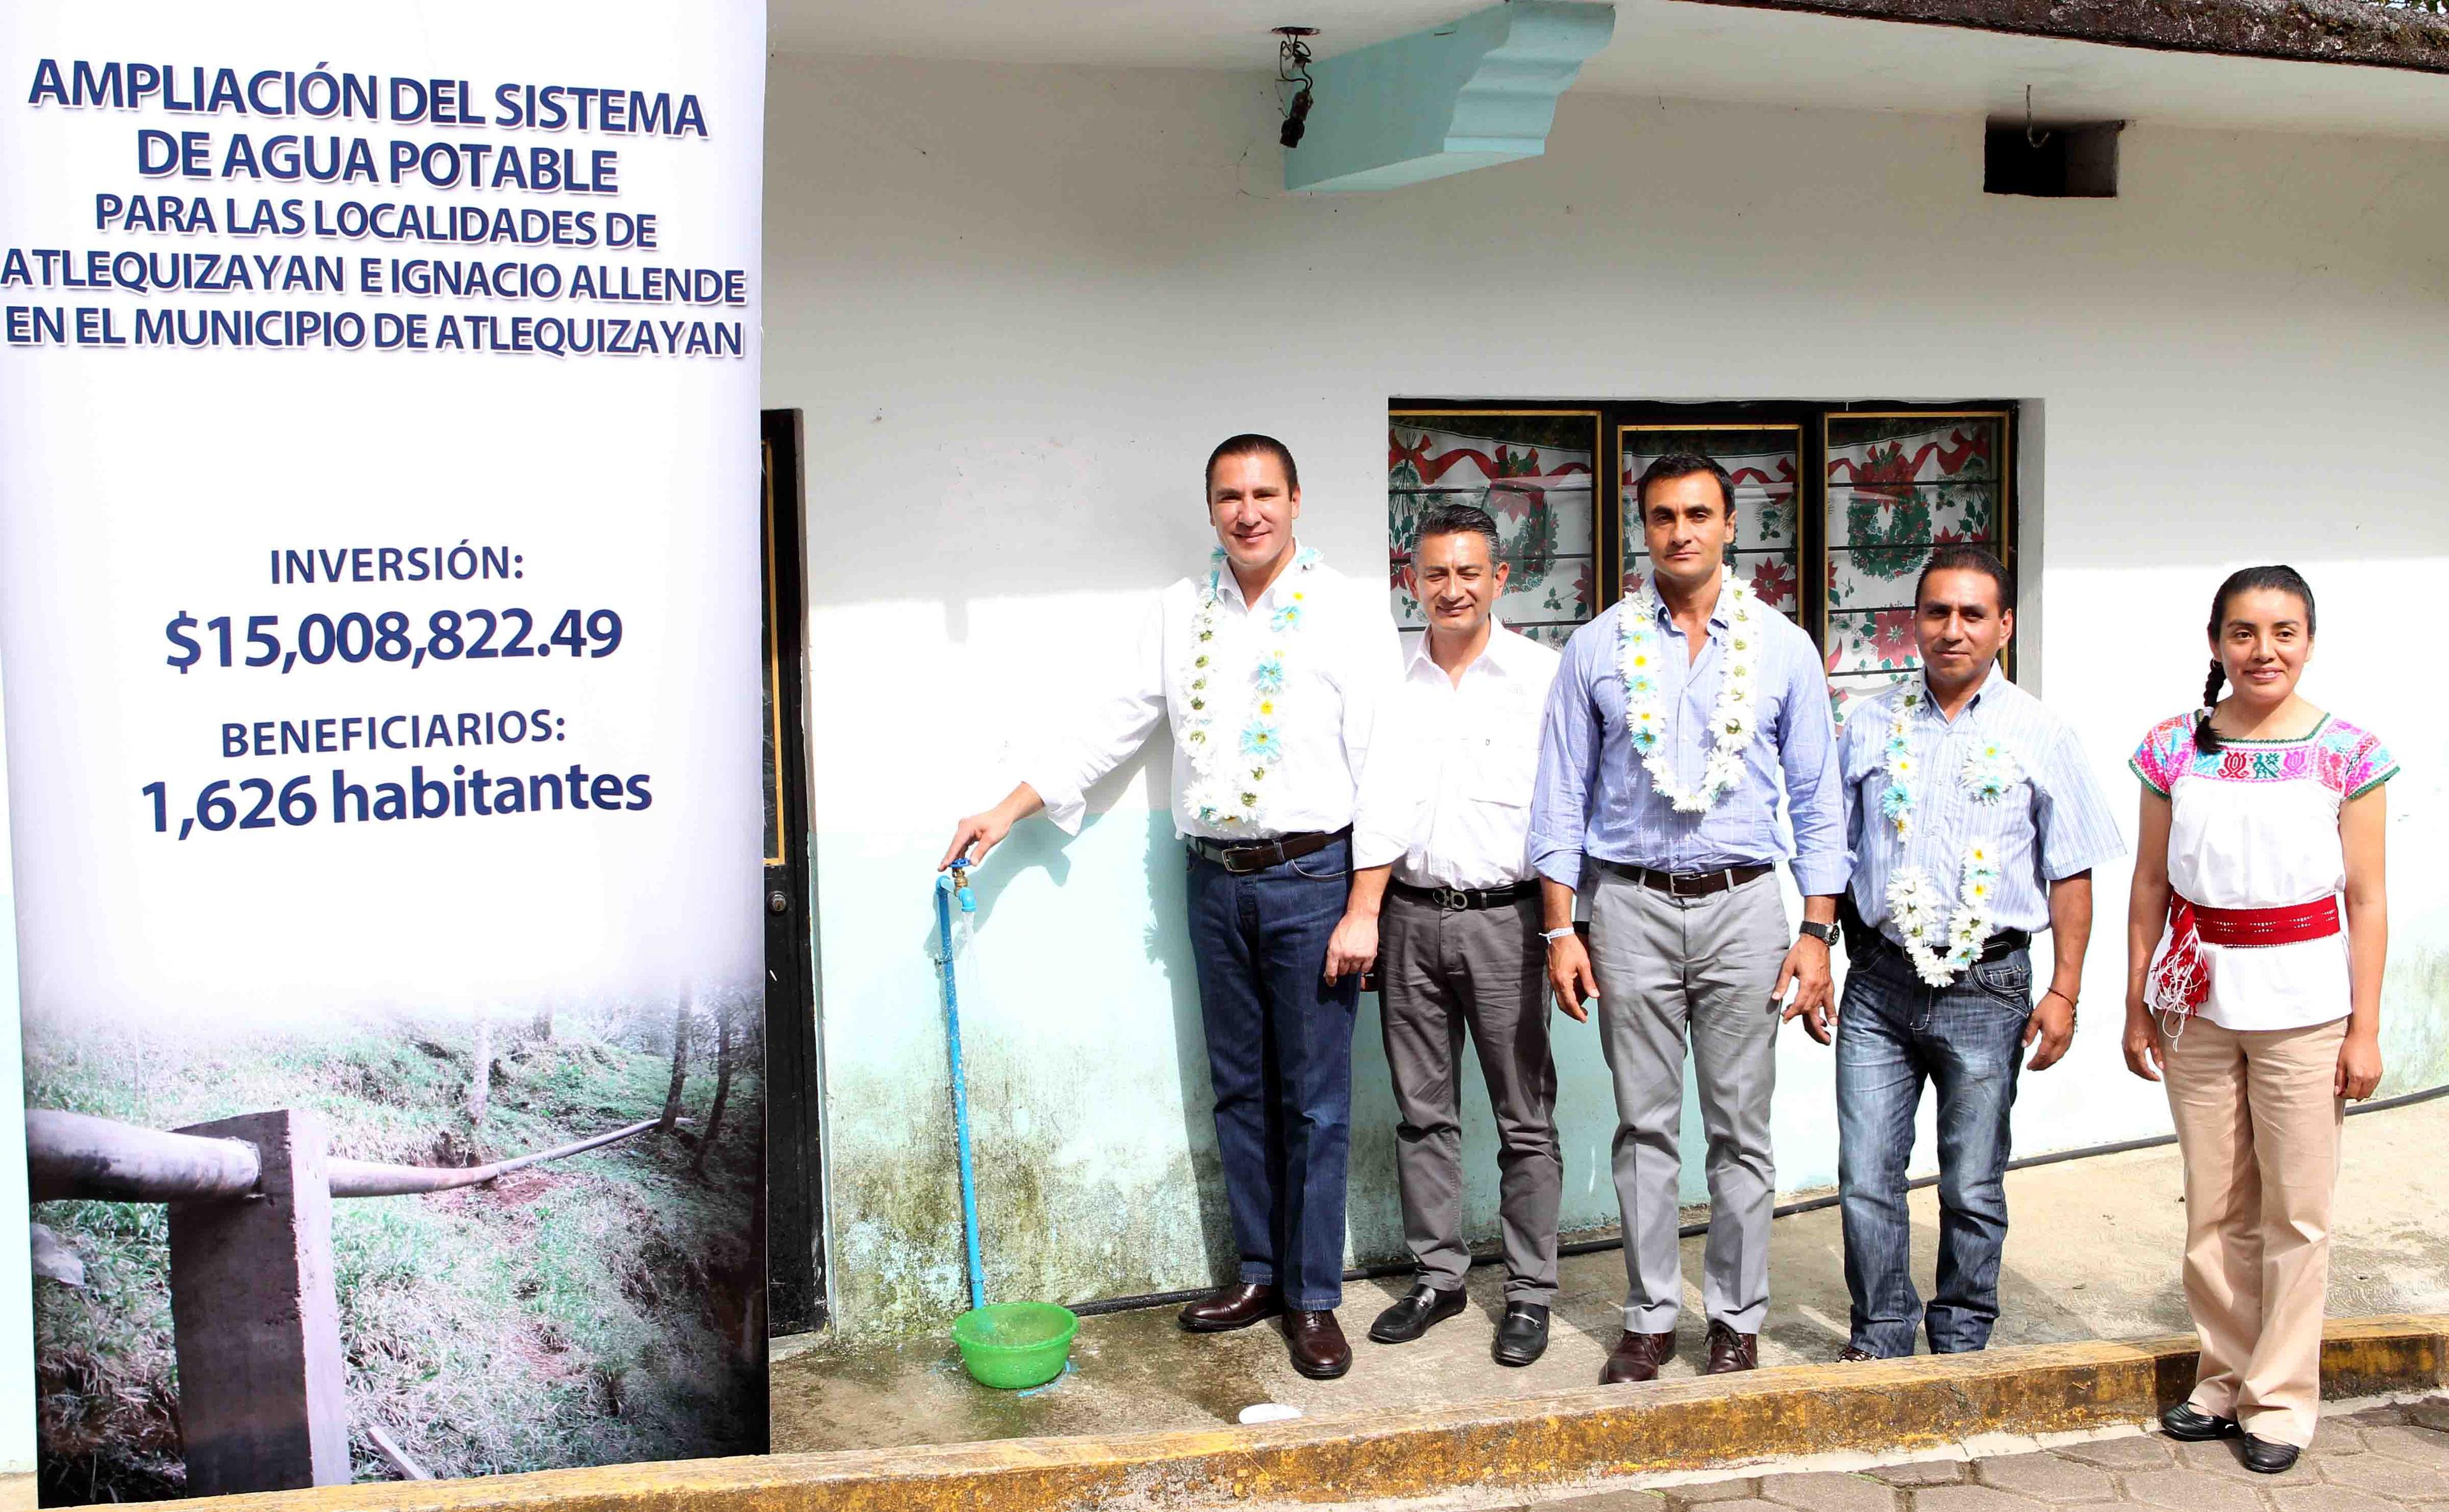 Moreno Valle entrega sistema de agua potable en Atlequizayan